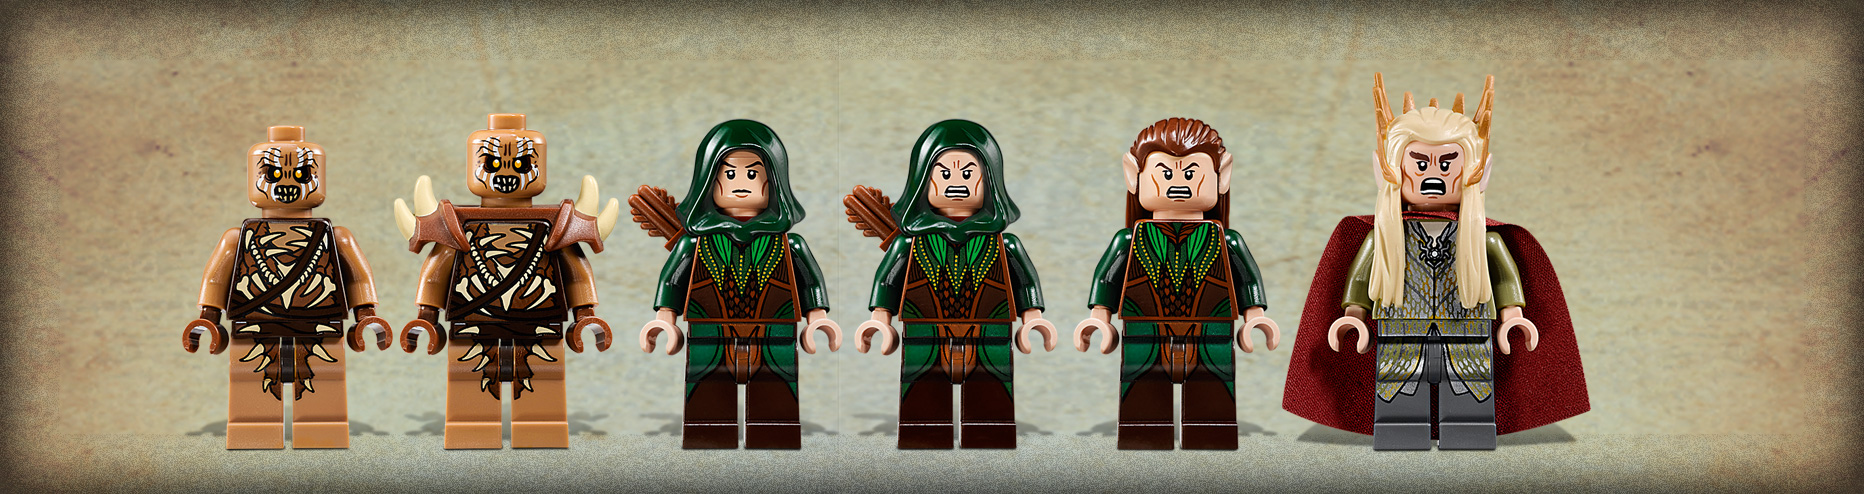 lego hobbit elves of mirkwood